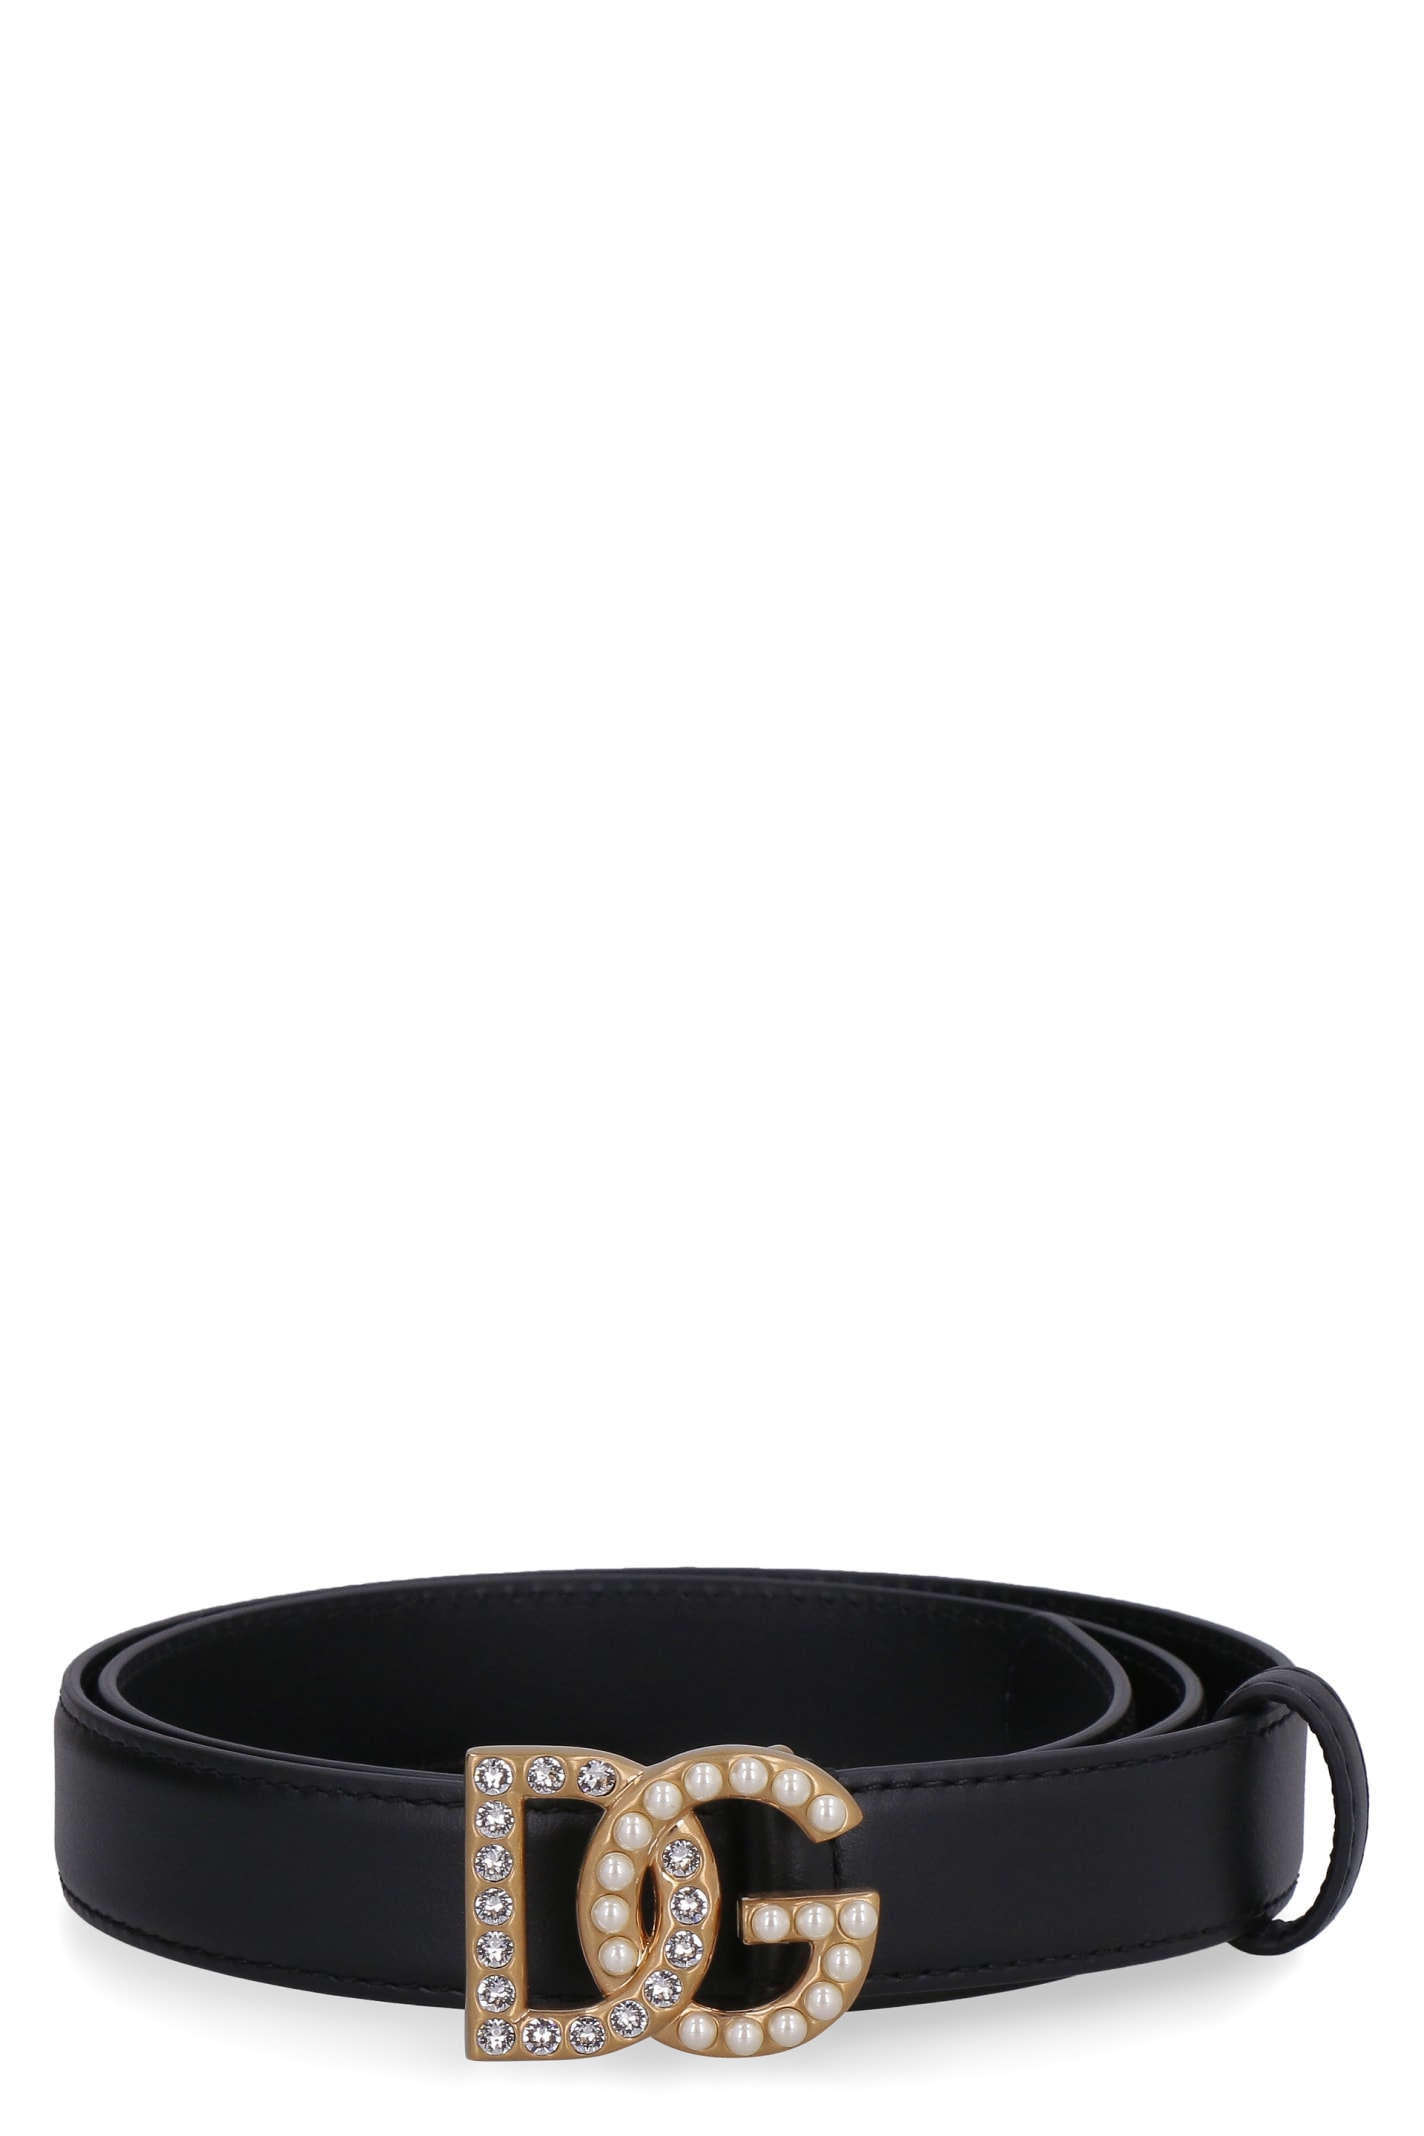 Dolce & Gabbana Embellished Buckle Leather Belt